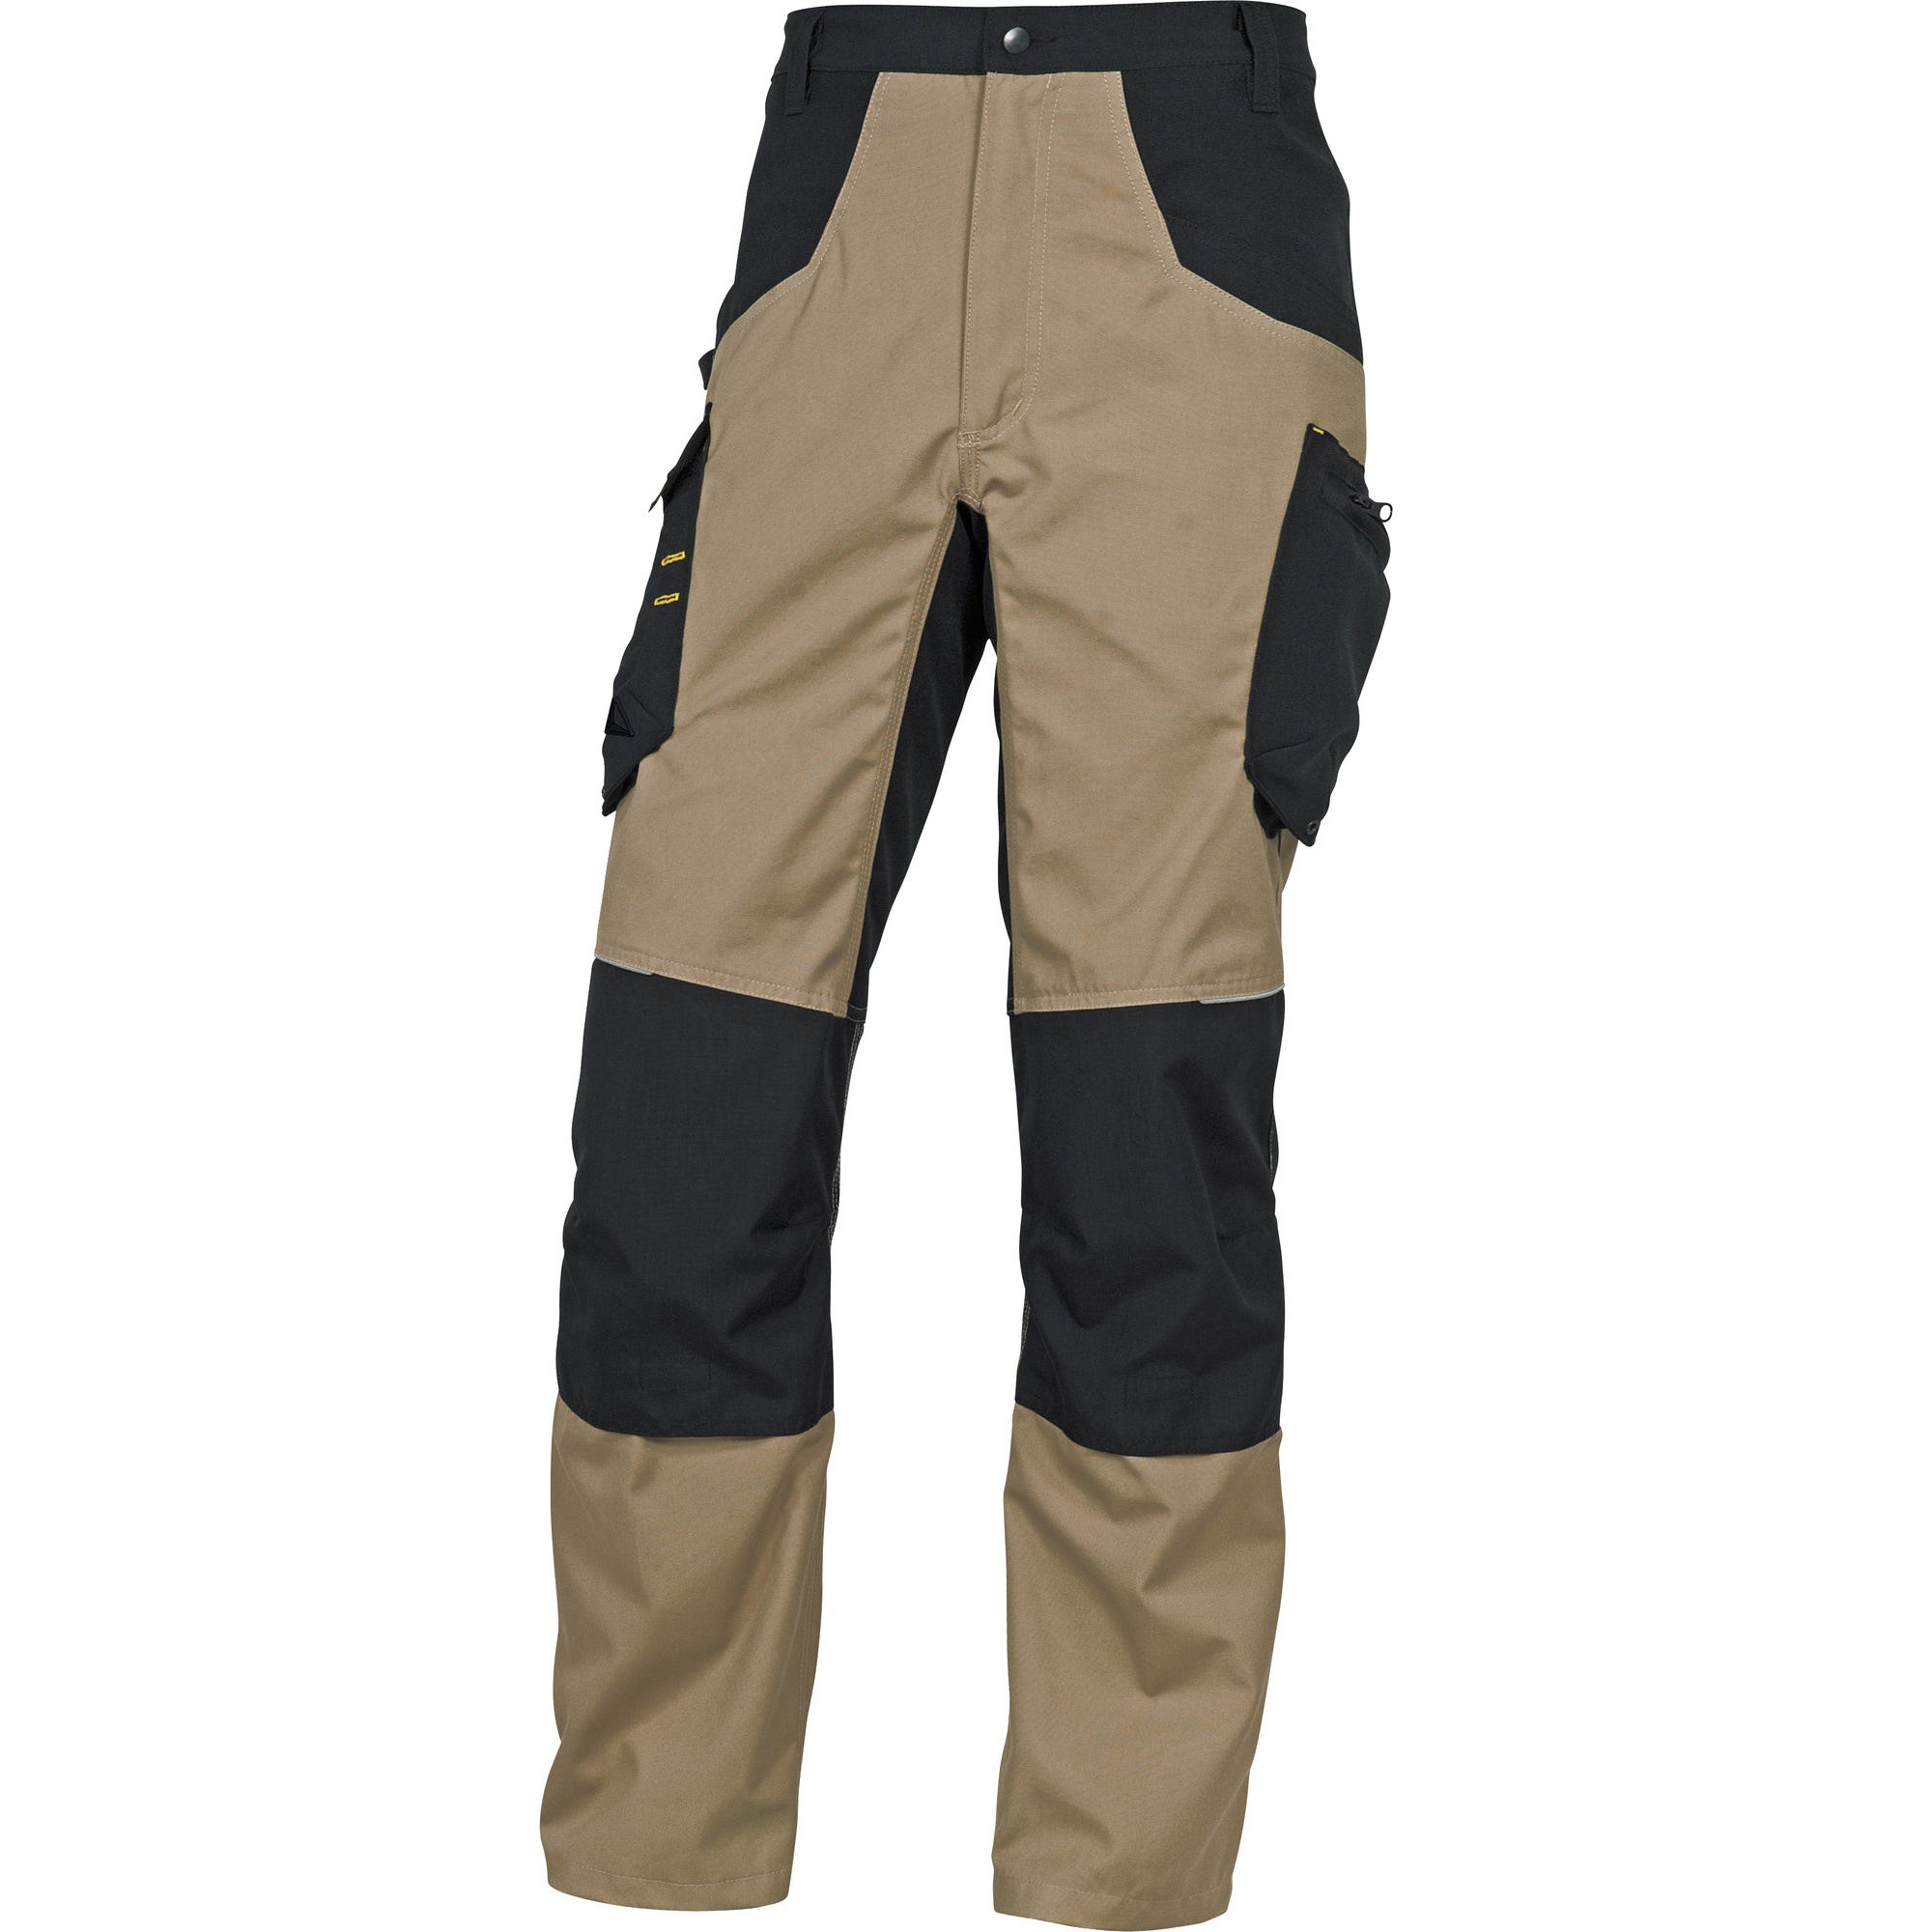 Pantalon de travail beige / noir T.XXL Mach5 - DELTA PLUS 0